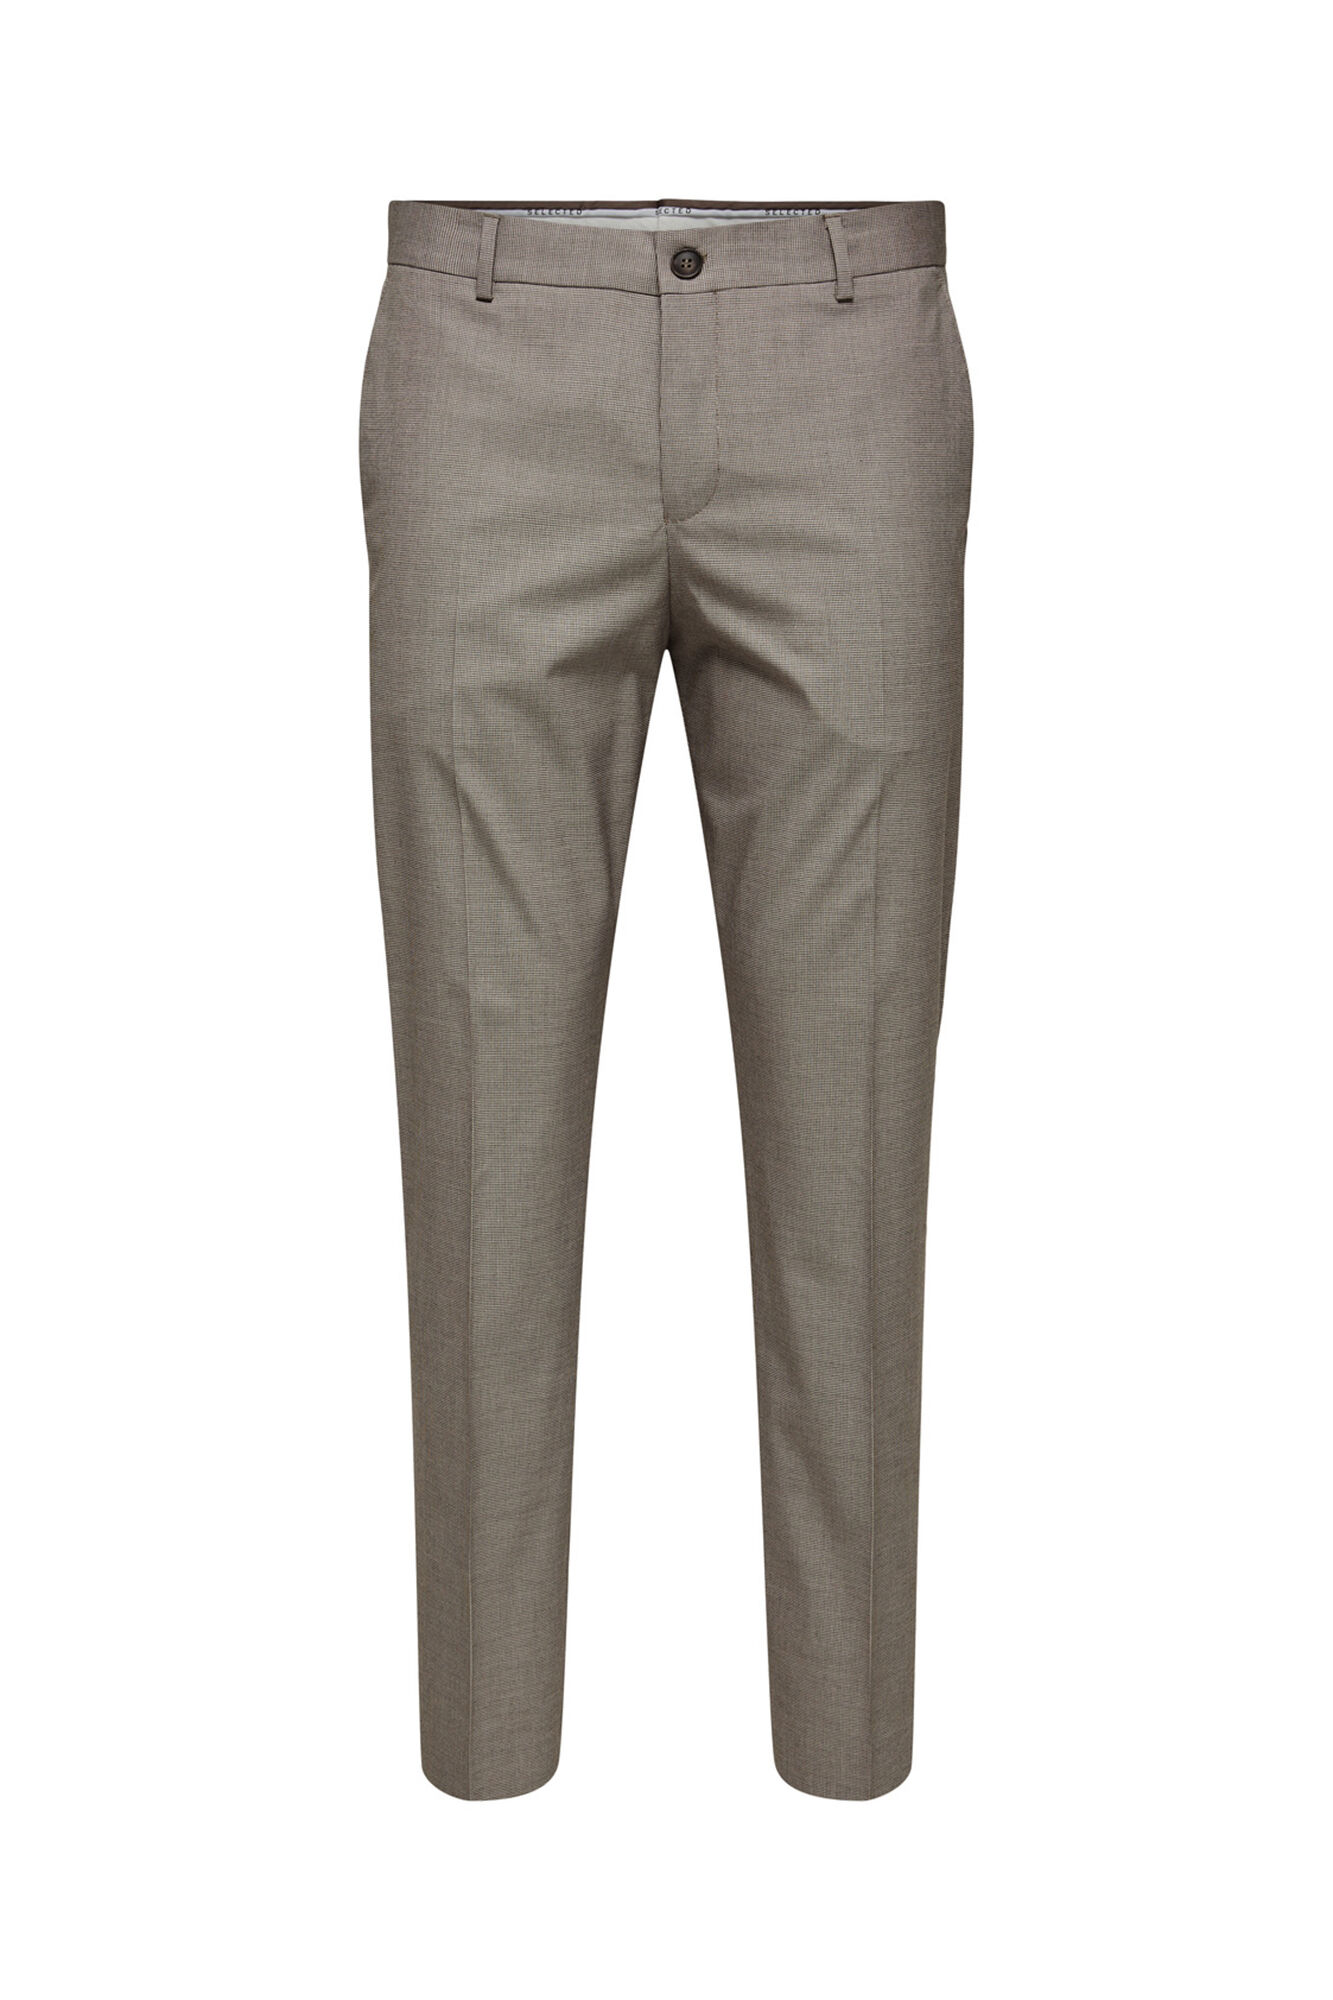 Textured Linen Blend Suit Pants in Navy | Hallensteins US